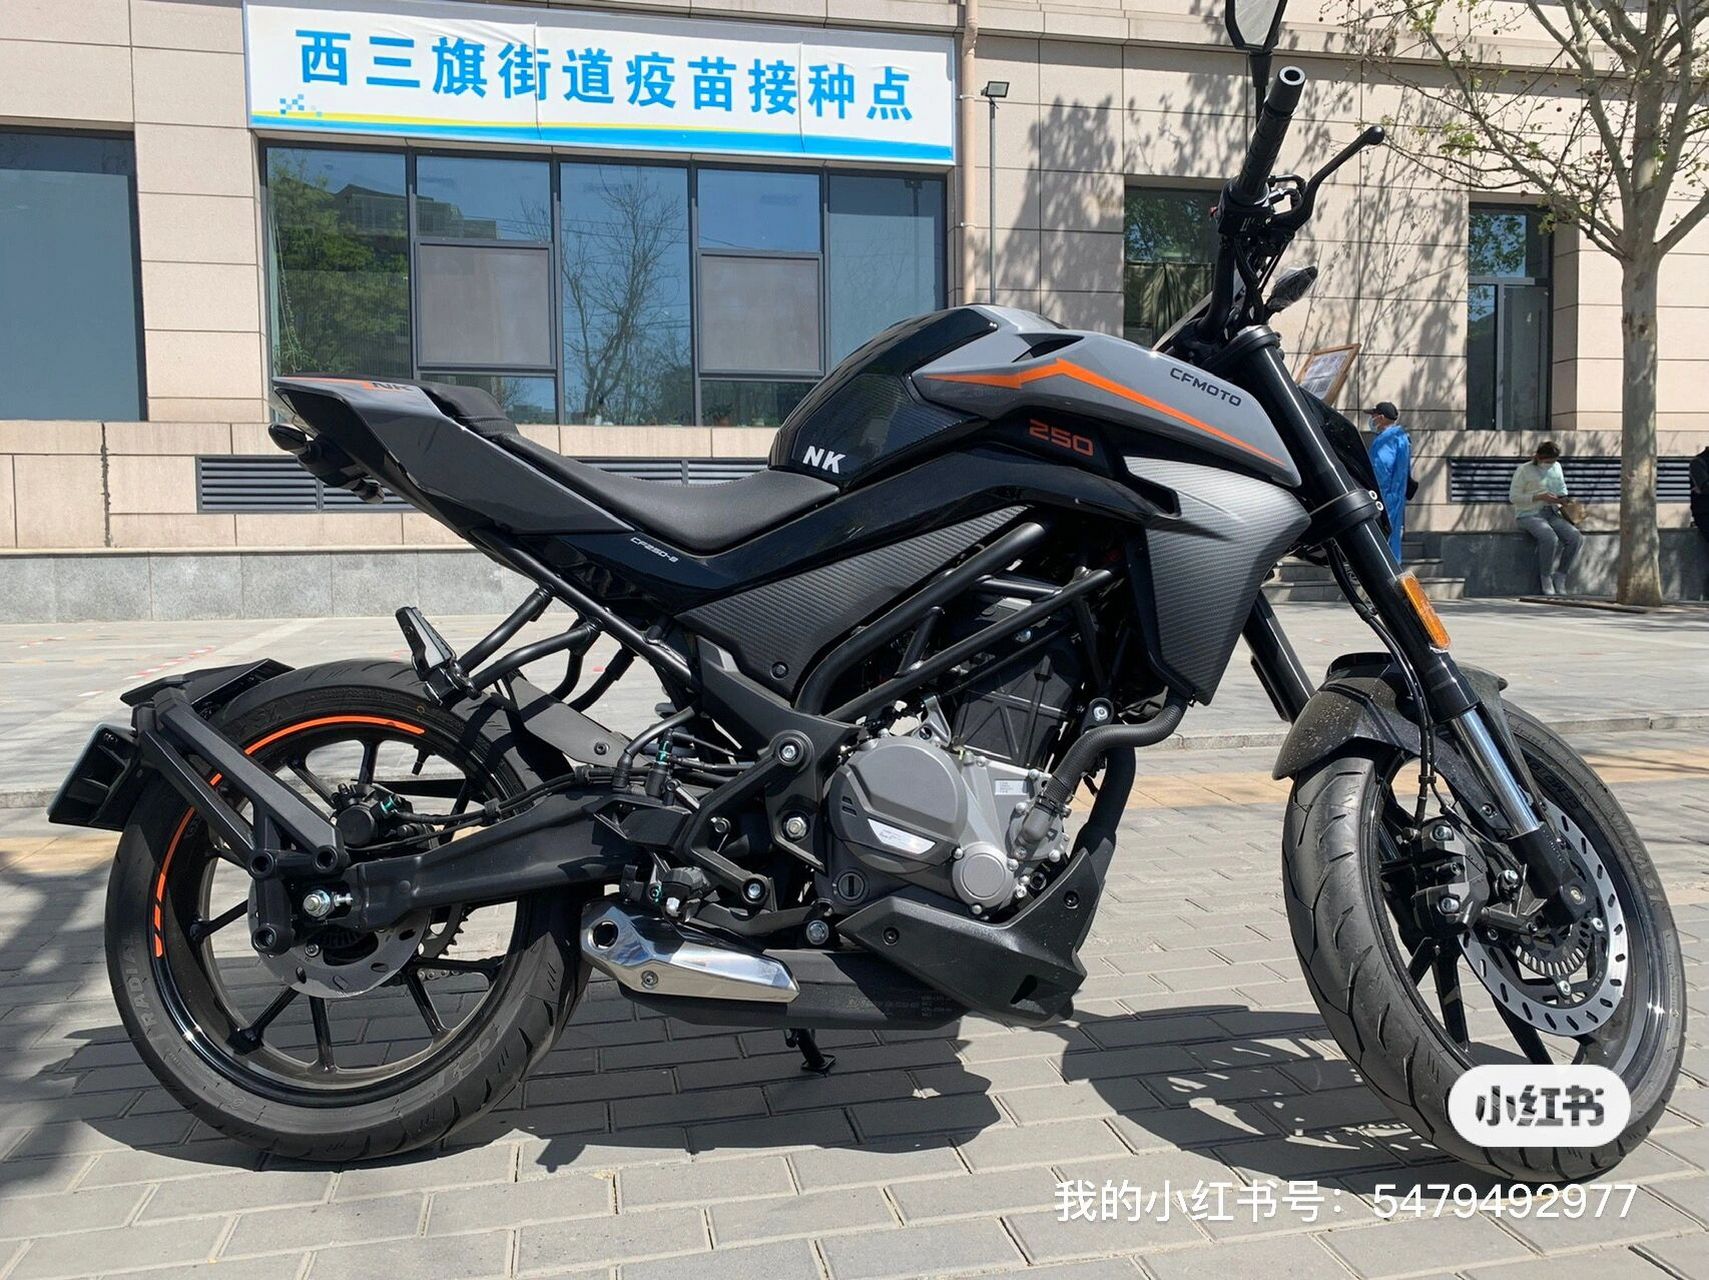 最新的北京摩托车上牌指南(京b)截止5月31 我去的是昌平北方机动车